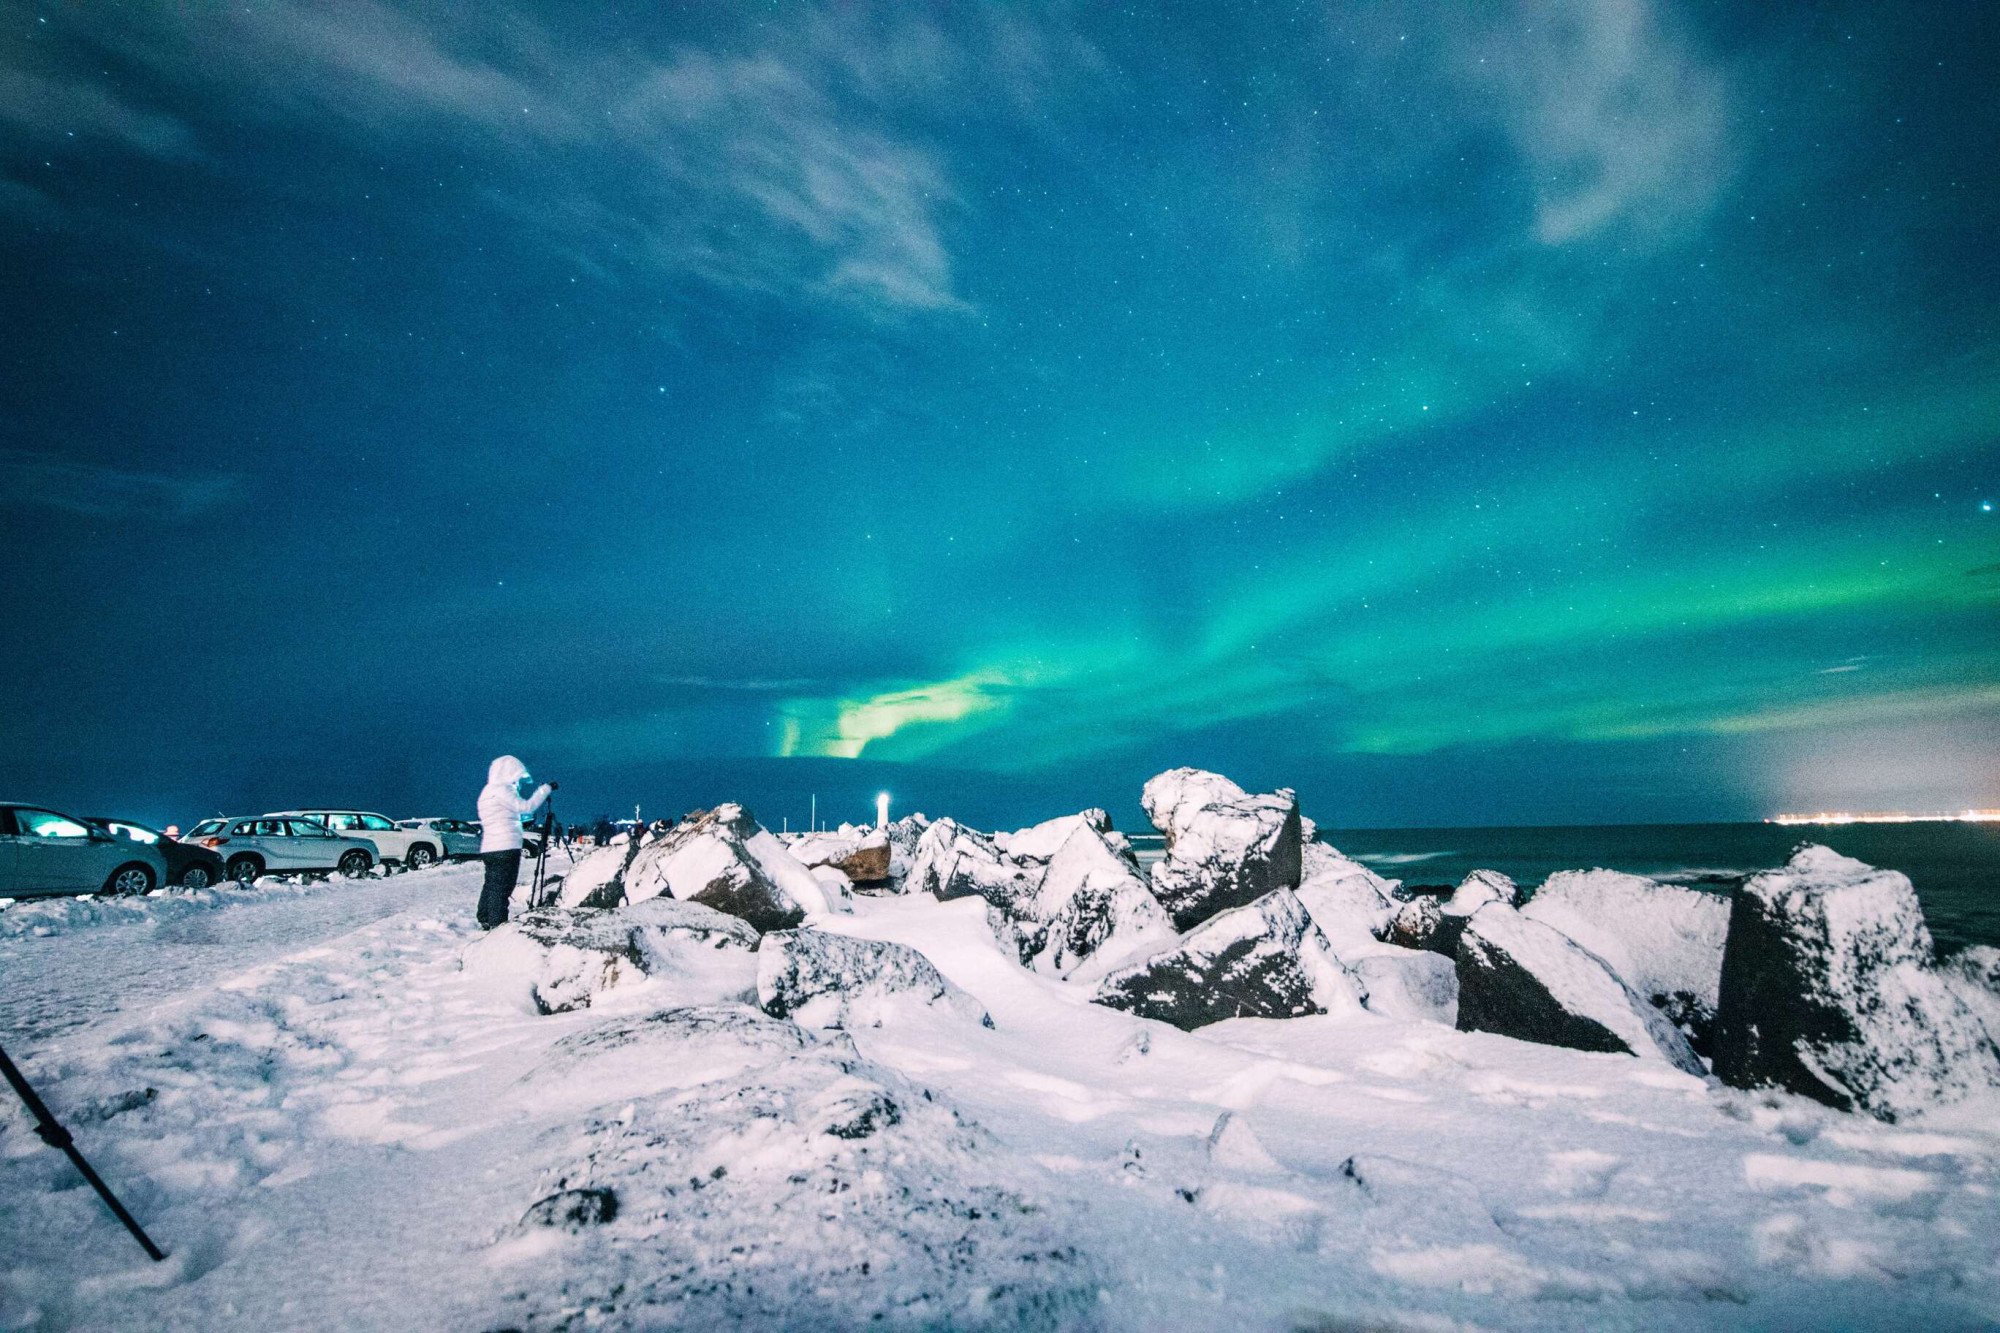 IJsland Reykjavik noorderlicht sneeuw